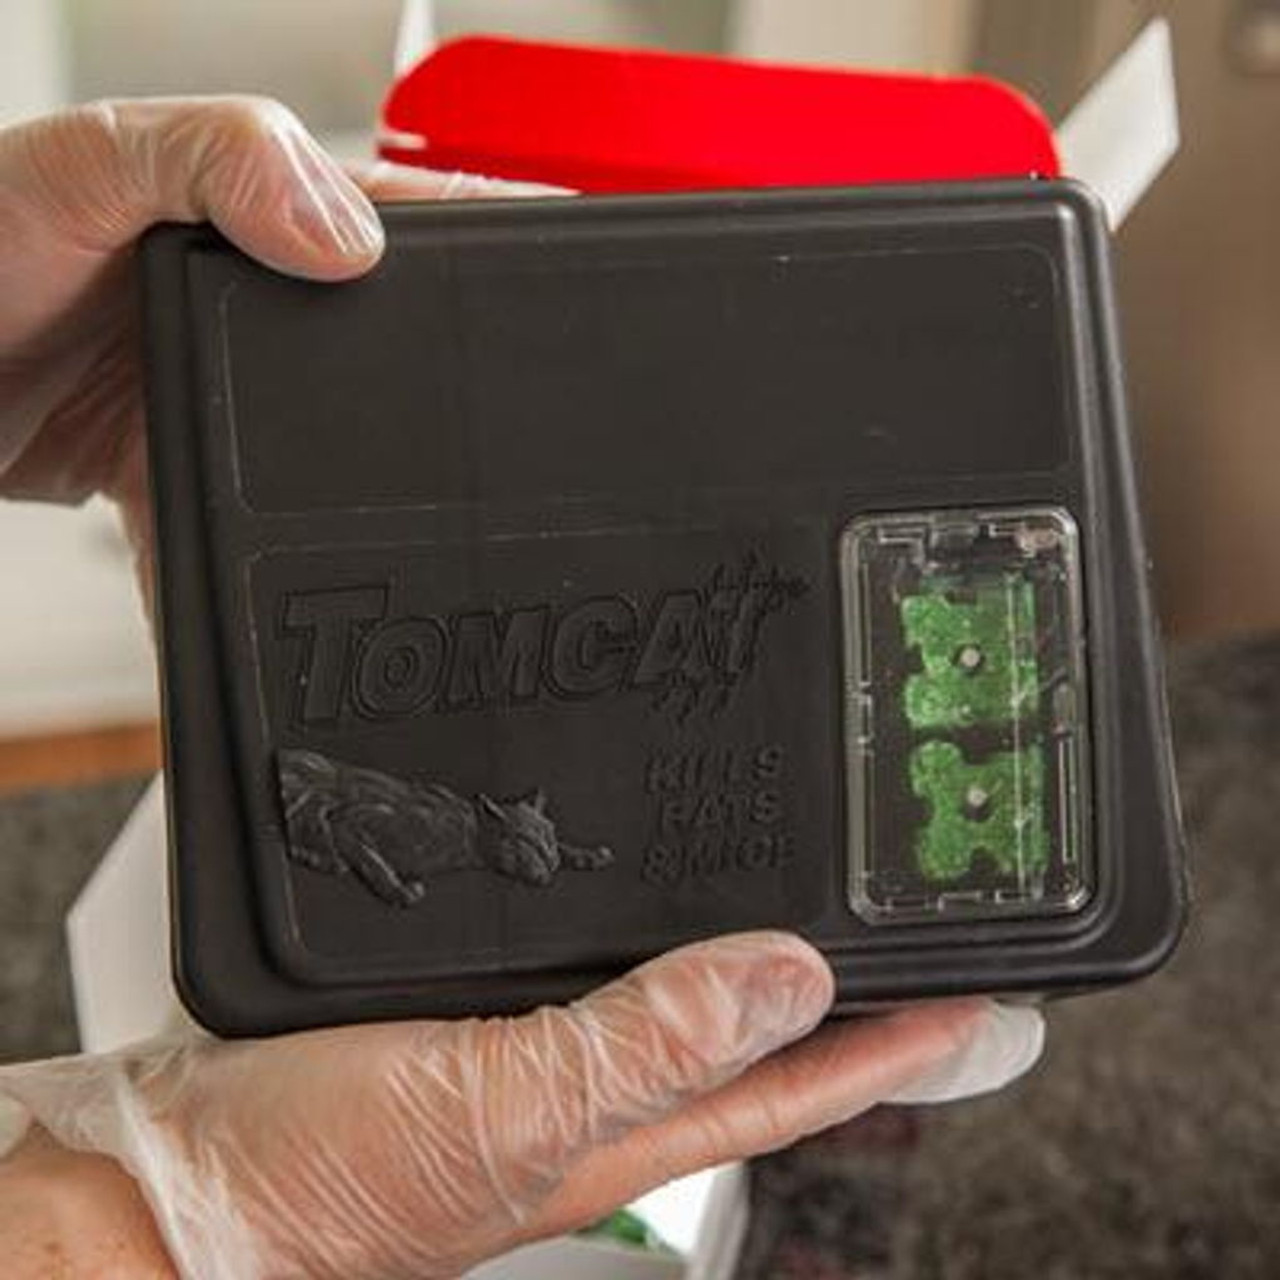 TOMCAT Refillable Bait Station Rat & Mouse Killer (15-Refill